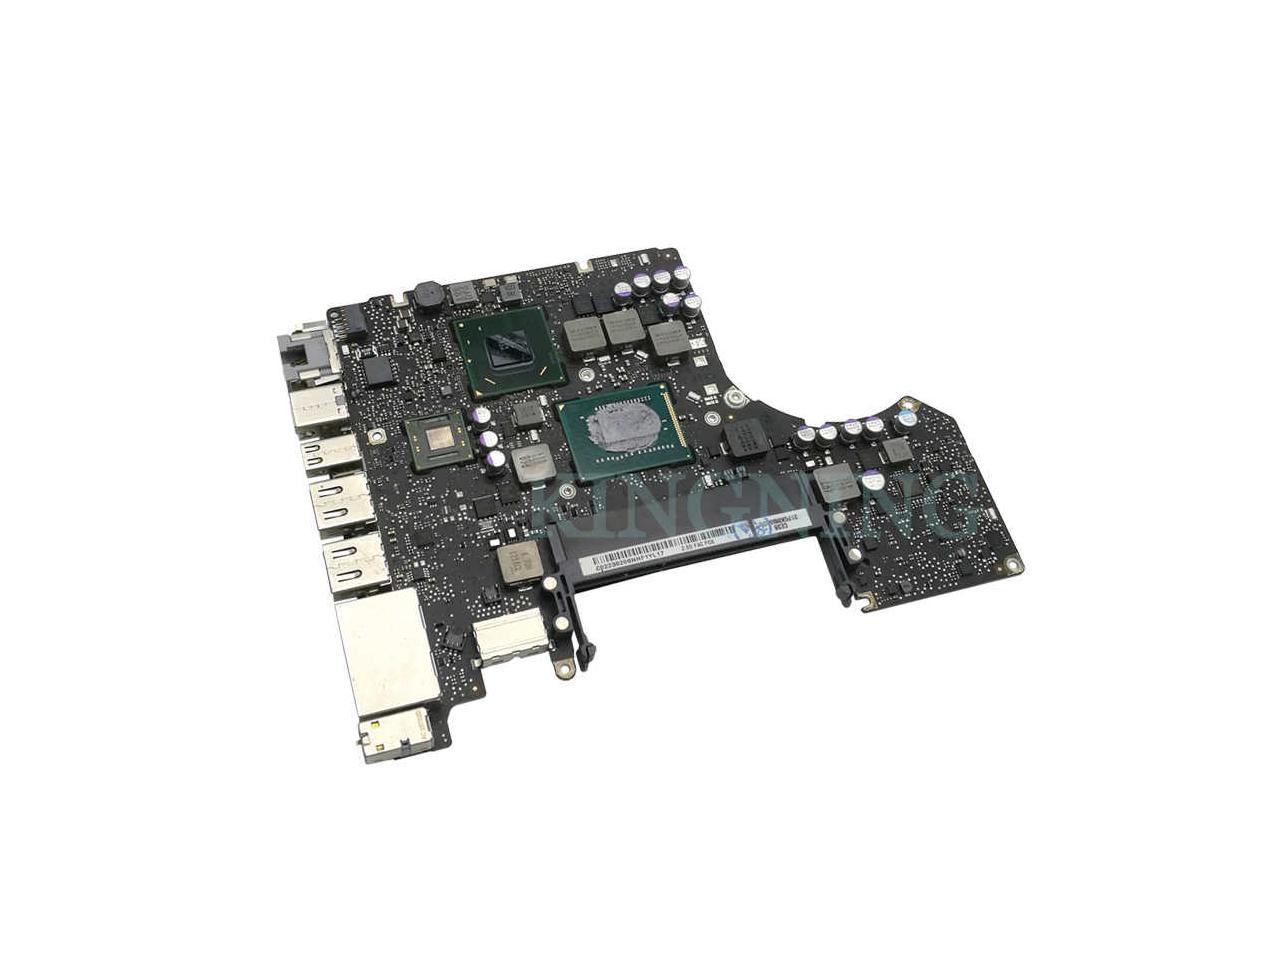 2010 macbook pro 13 logic board processor replacement